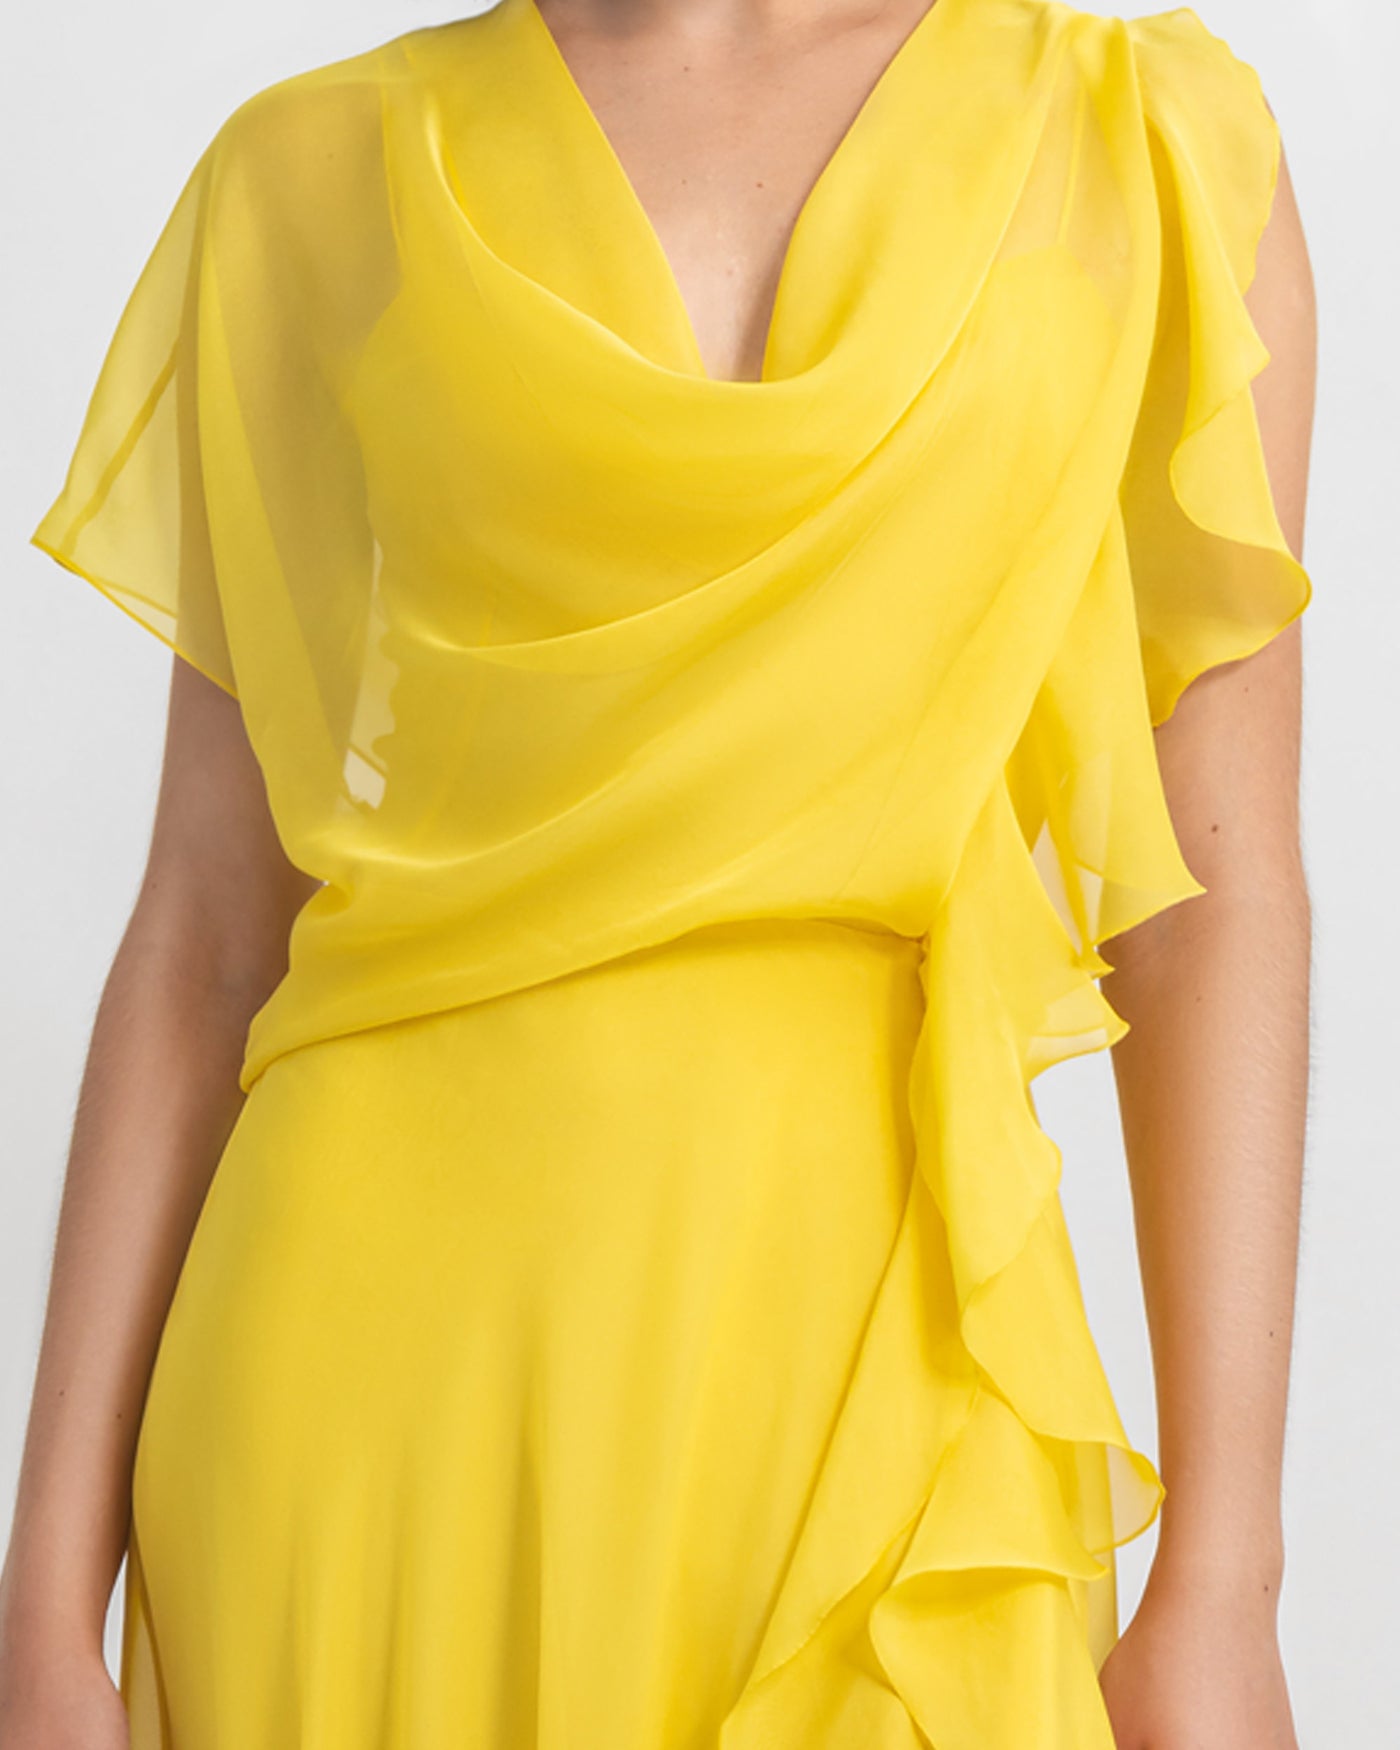 Draped Yellow Chiffon Dress